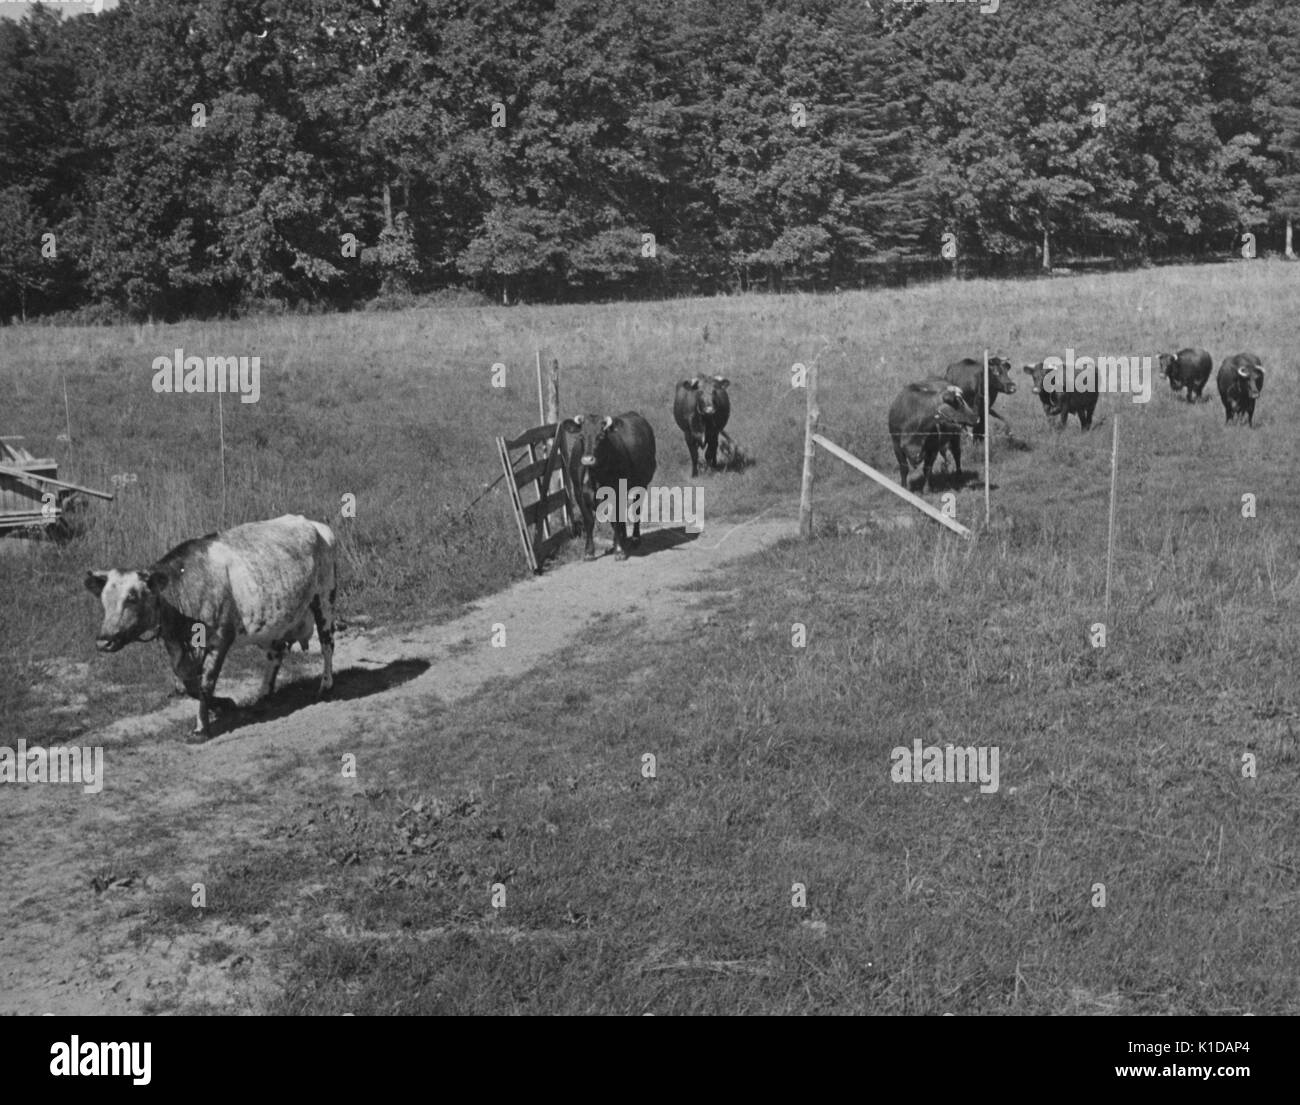 Vaches marchant sur un chemin dans une ferme dans le comté de Price Georges, Maryland, 1935. De la bibliothèque publique de New York. Banque D'Images